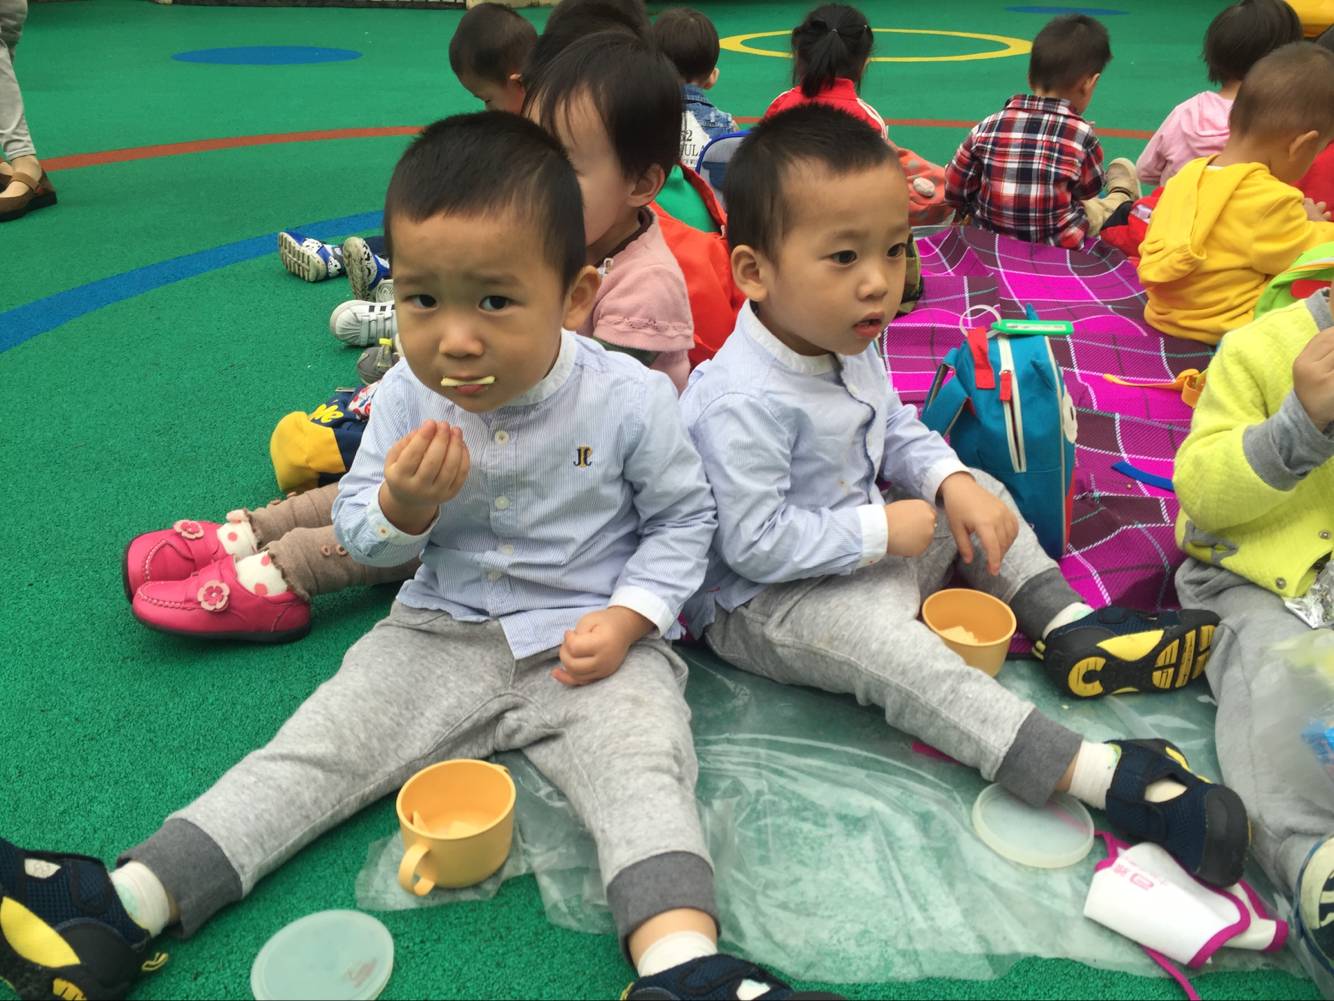 果果班&宝宝班的《瓶瓶罐罐》主题活动——保龄球 - 多彩的一天 - 杭州市德胜幼儿园